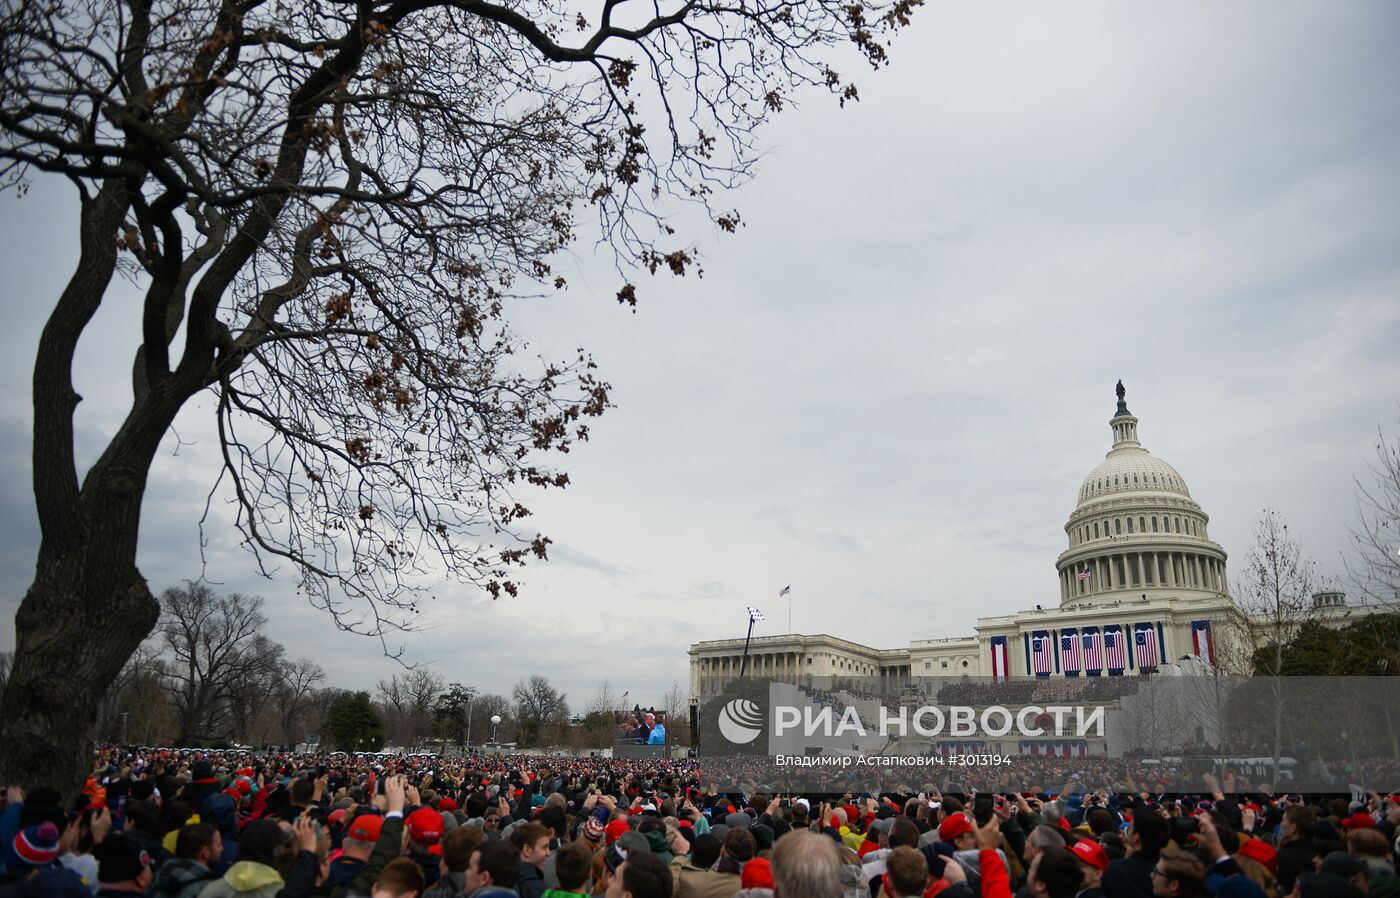 Инаугурация 45-го президента США Д. Трампа в Вашингтоне